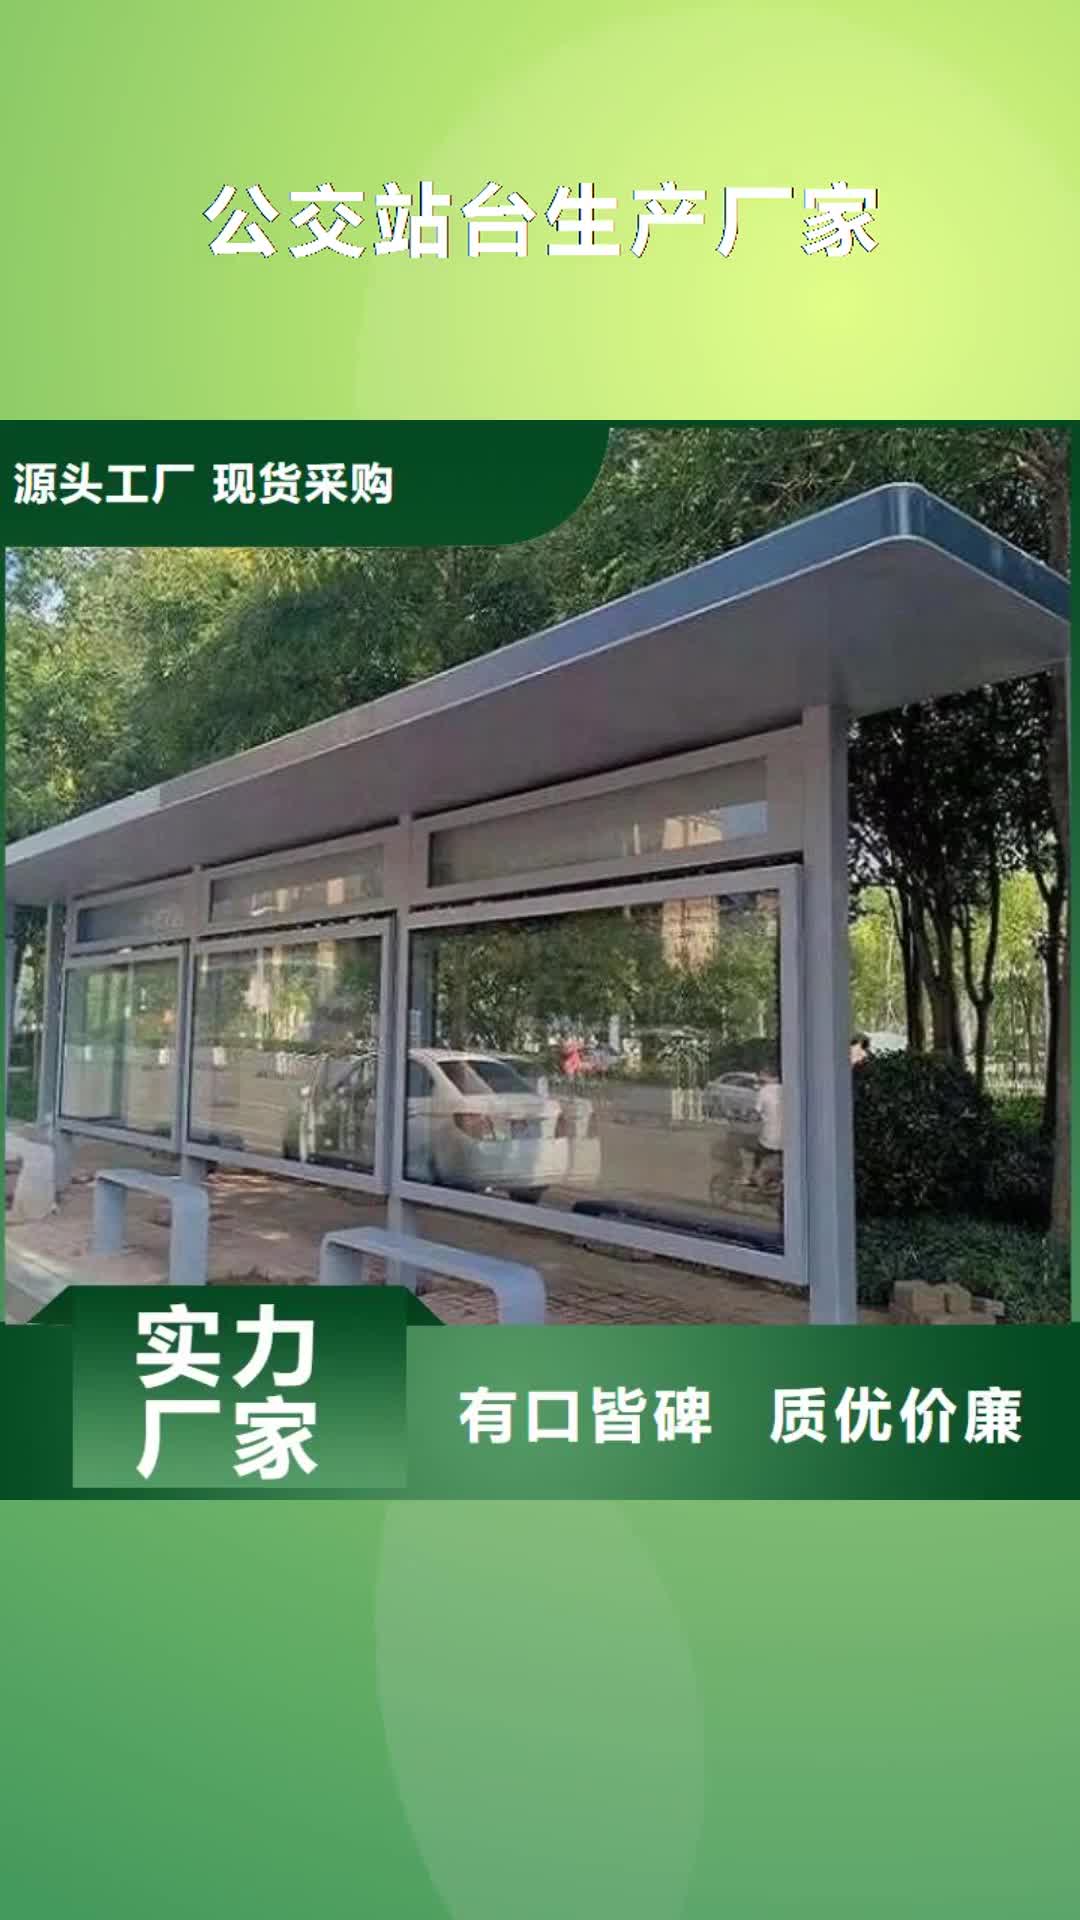 阳江【公交站台生产厂家】,公交站台对质量负责